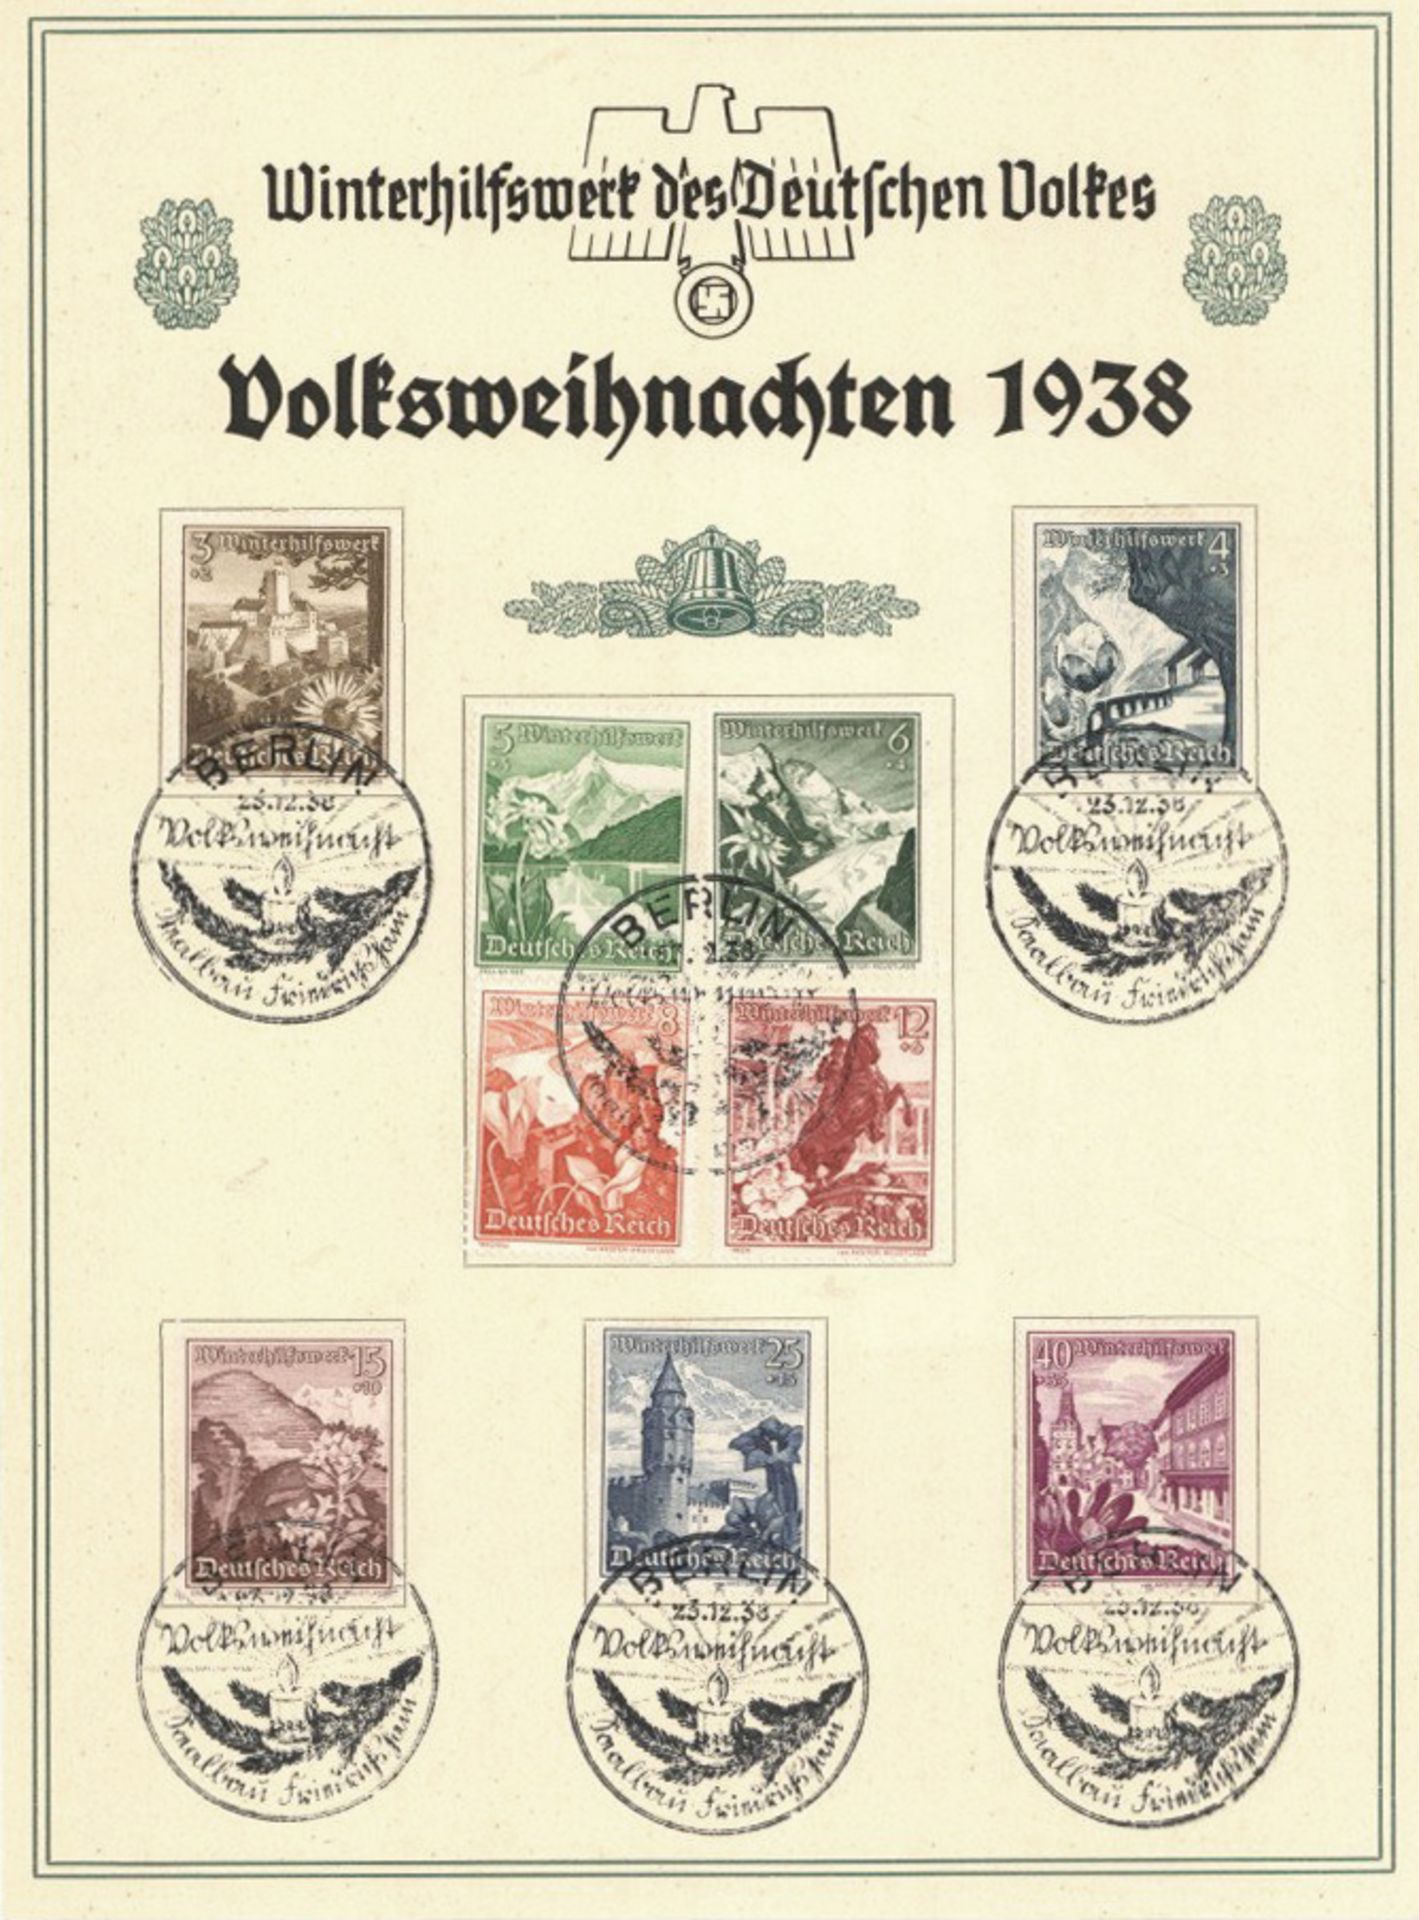 WHW Volksweihnachten 1938, Block mit 9 Briefmarken I-II